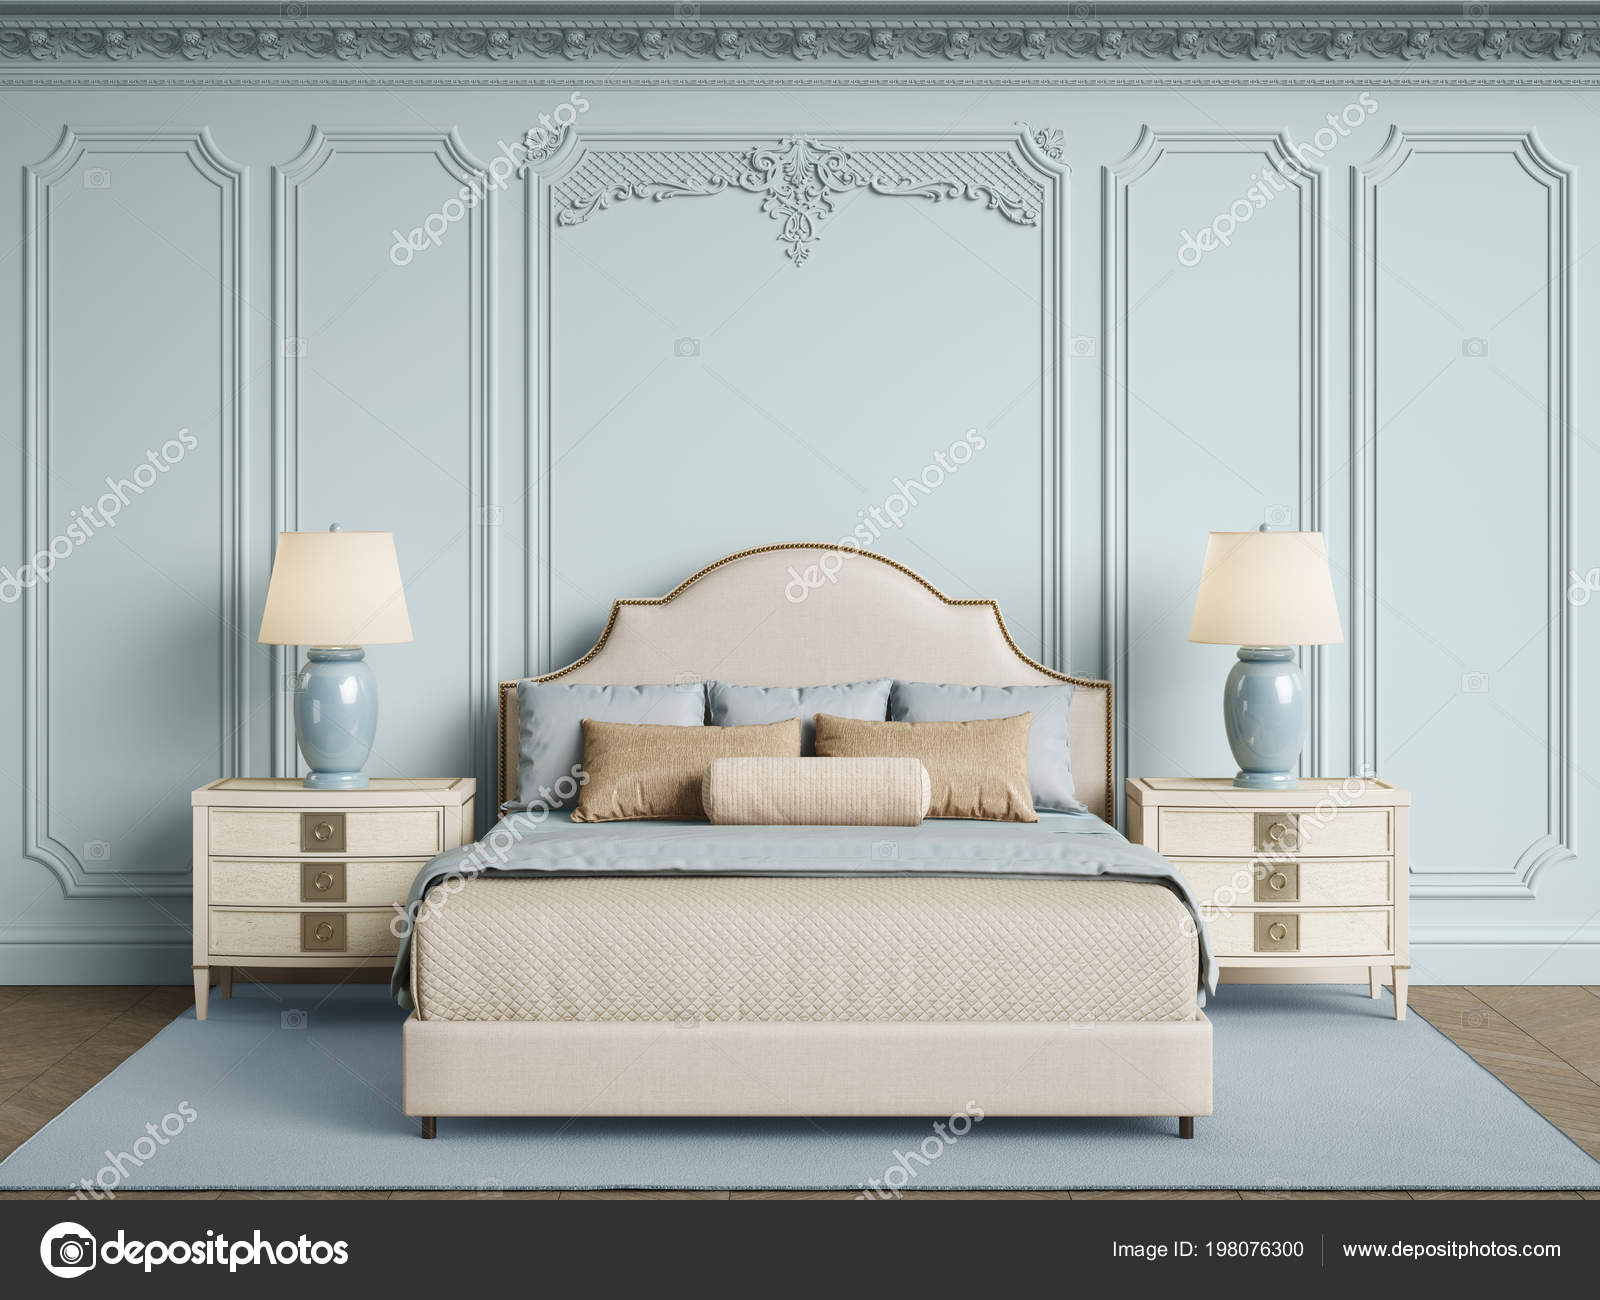 Klasik Yatak Odası Mobilya Klasik Kalıplar Ornated Korniş Duvarlarla